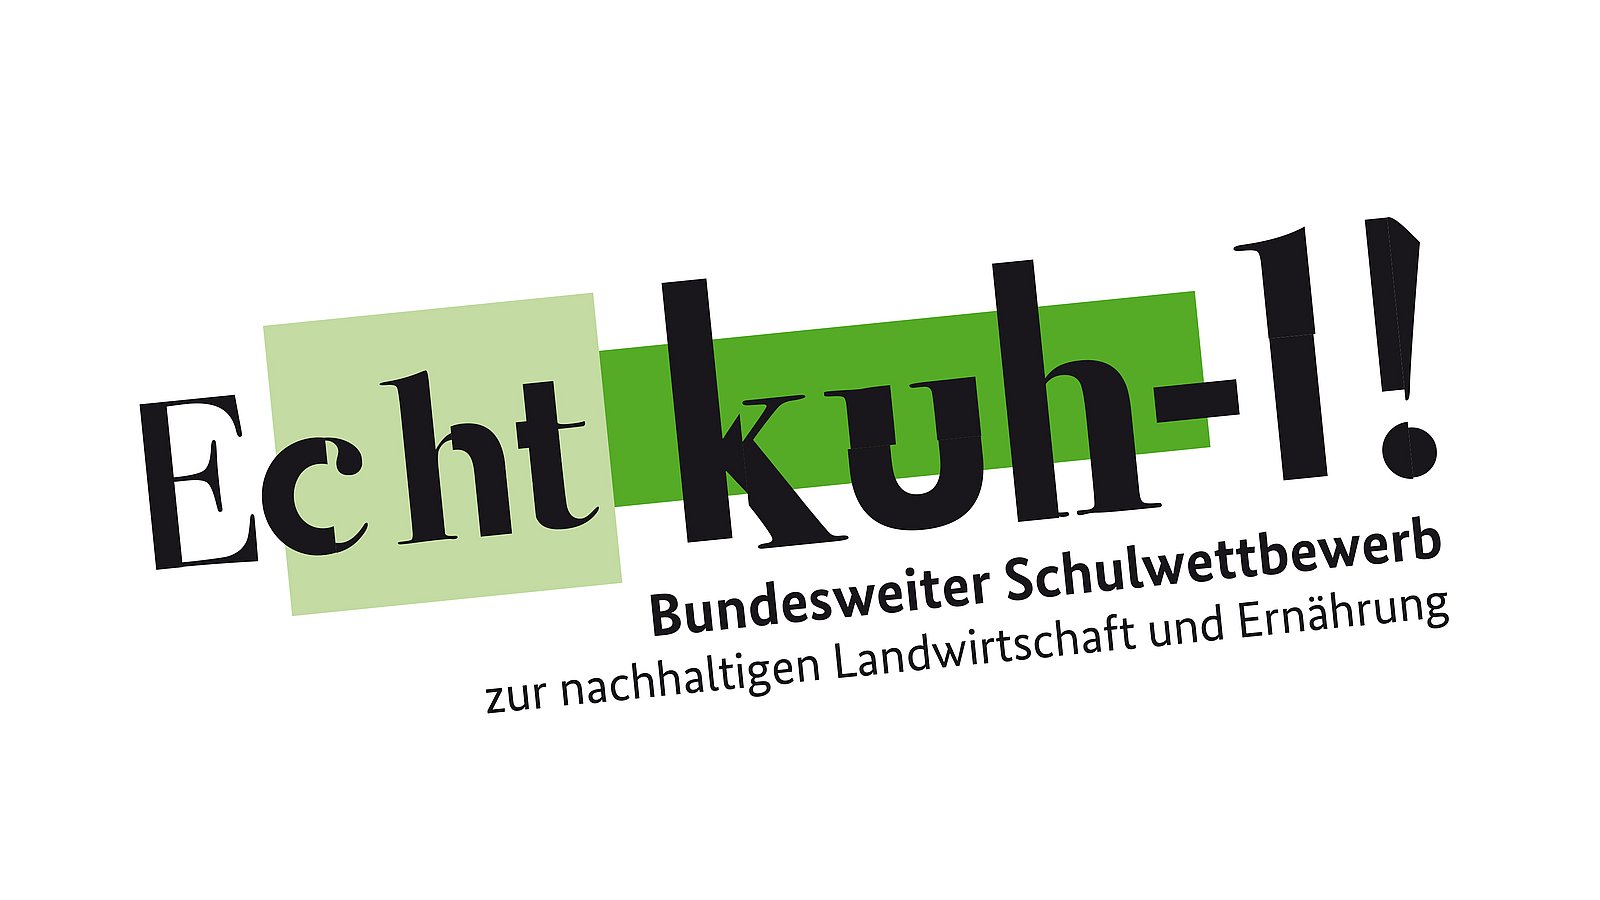 Logo Echt kuh-l: Text farbigen Hintergrund